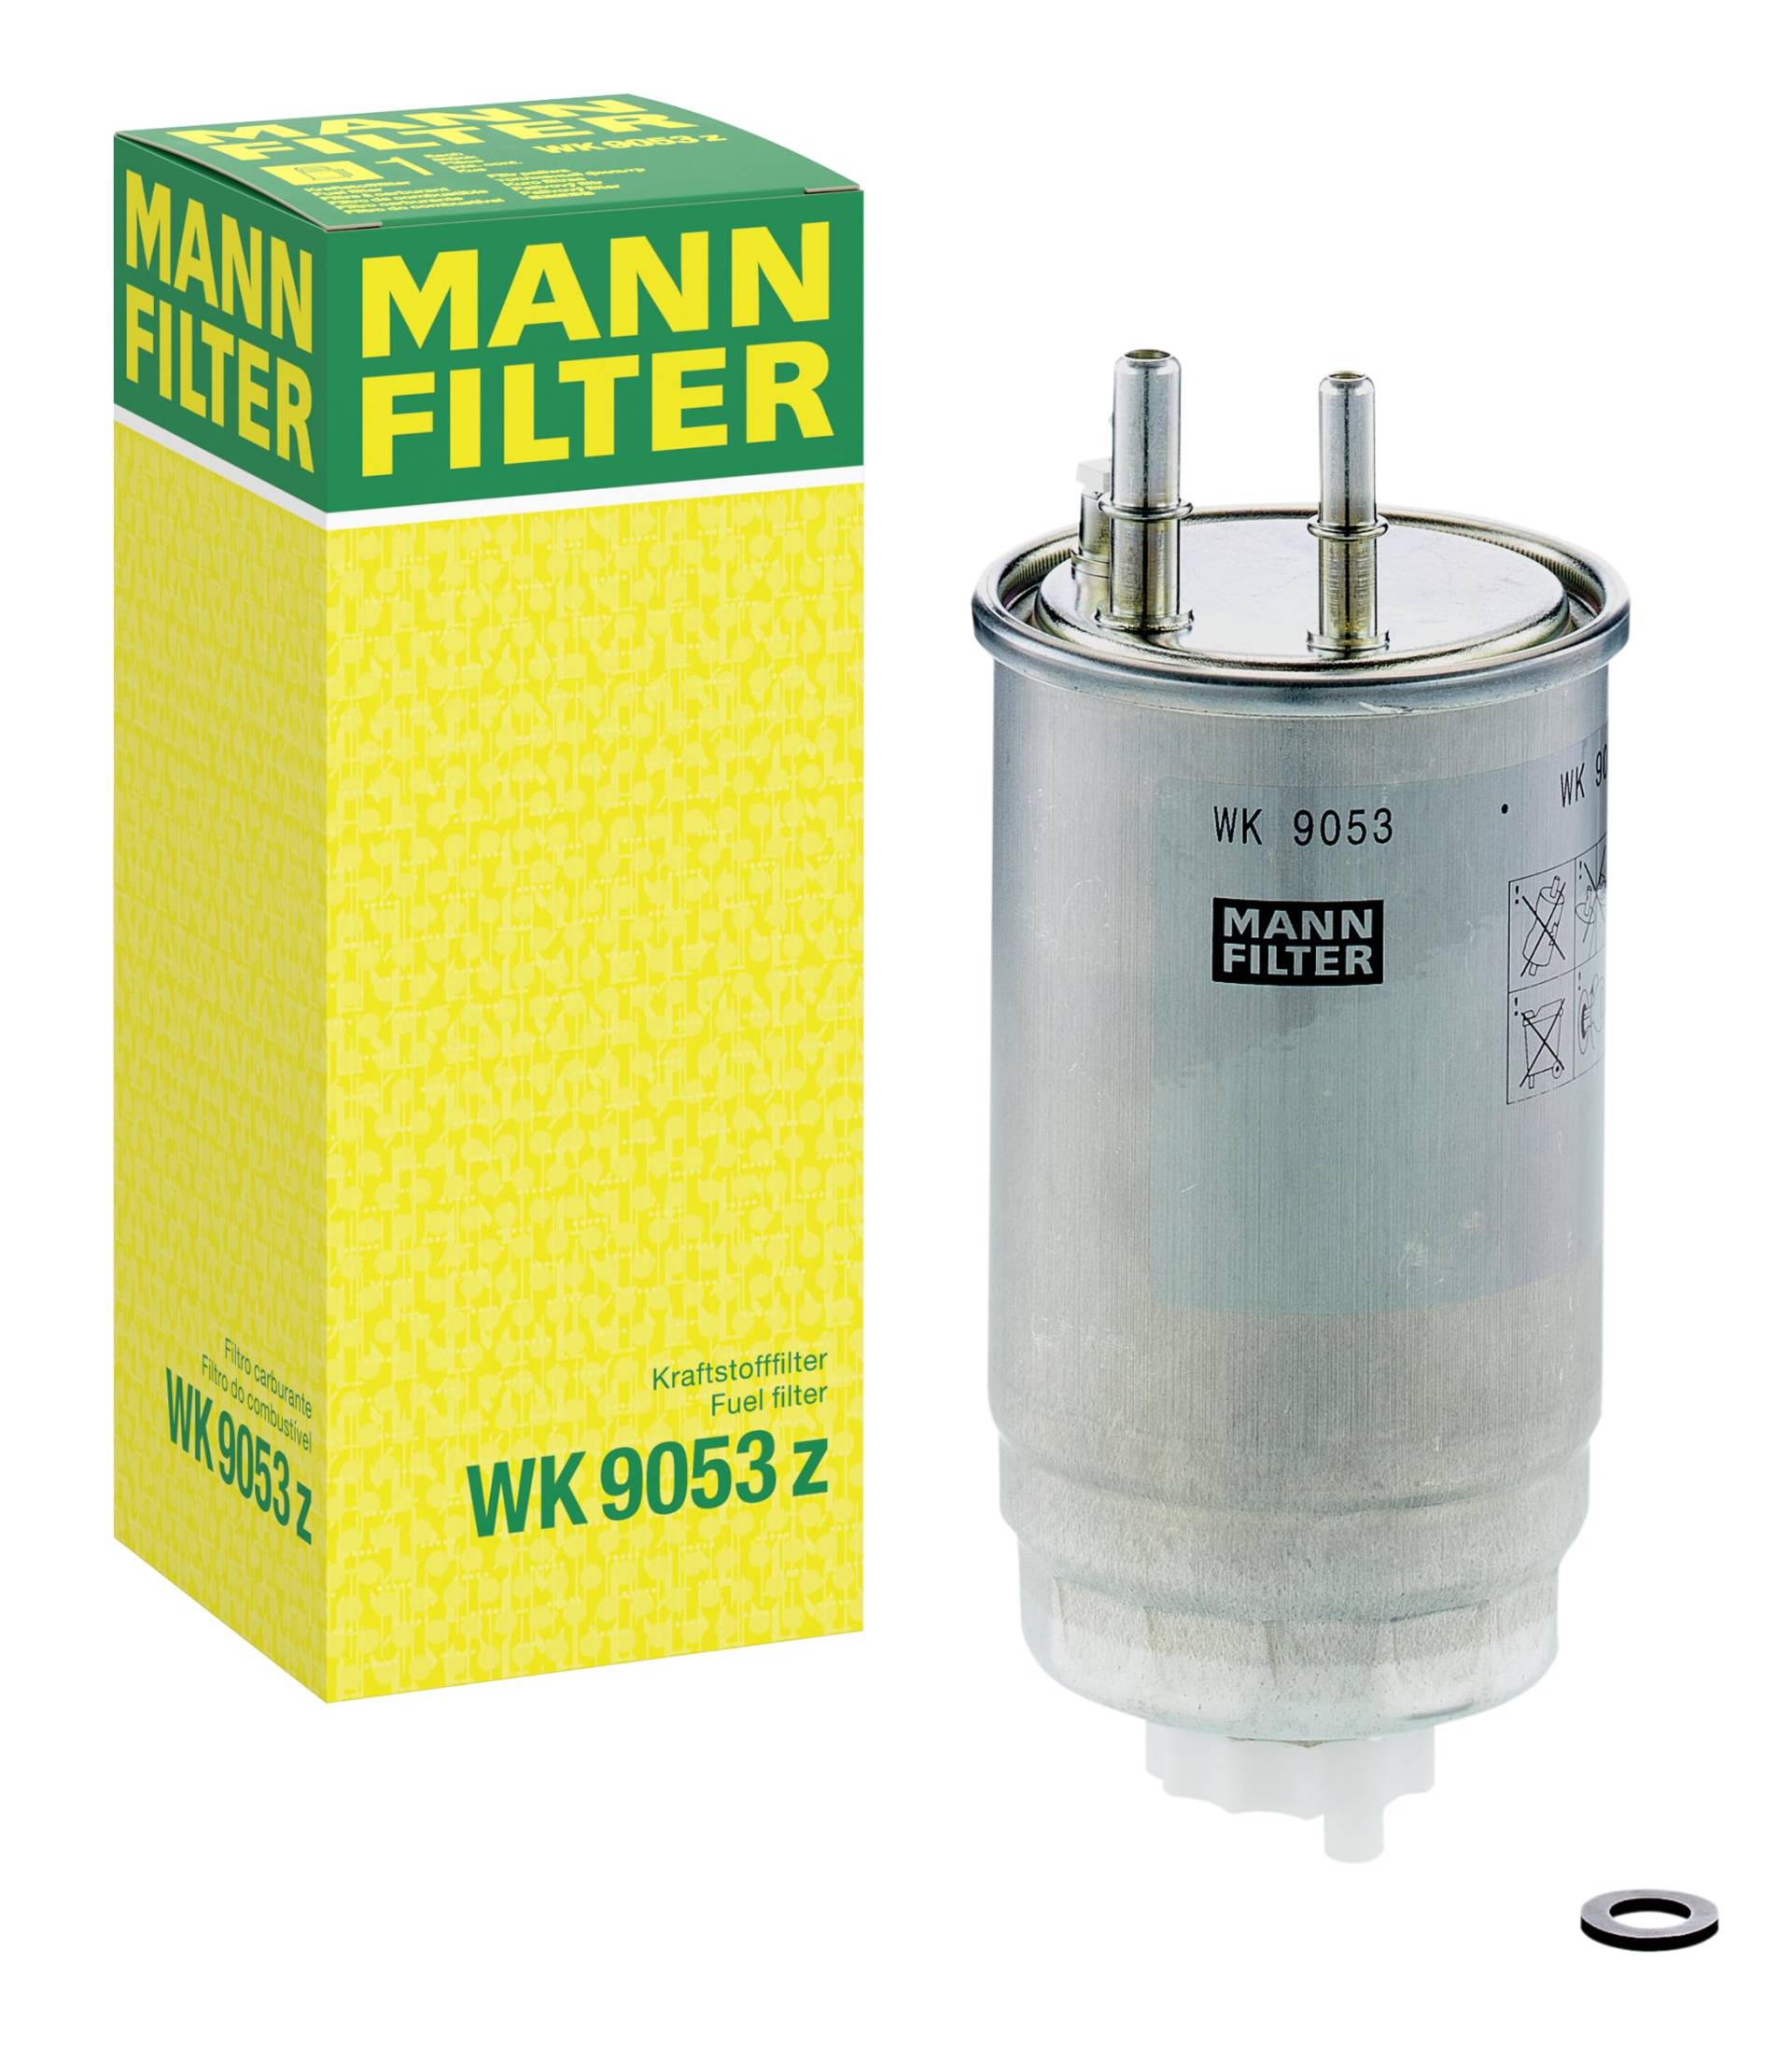 MANN-FILTER WK 9053 z Kraftstofffilter Satz mit Dichtung / Dichtungssatz Kraftstofffilter – Für PKW von MANN-FILTER